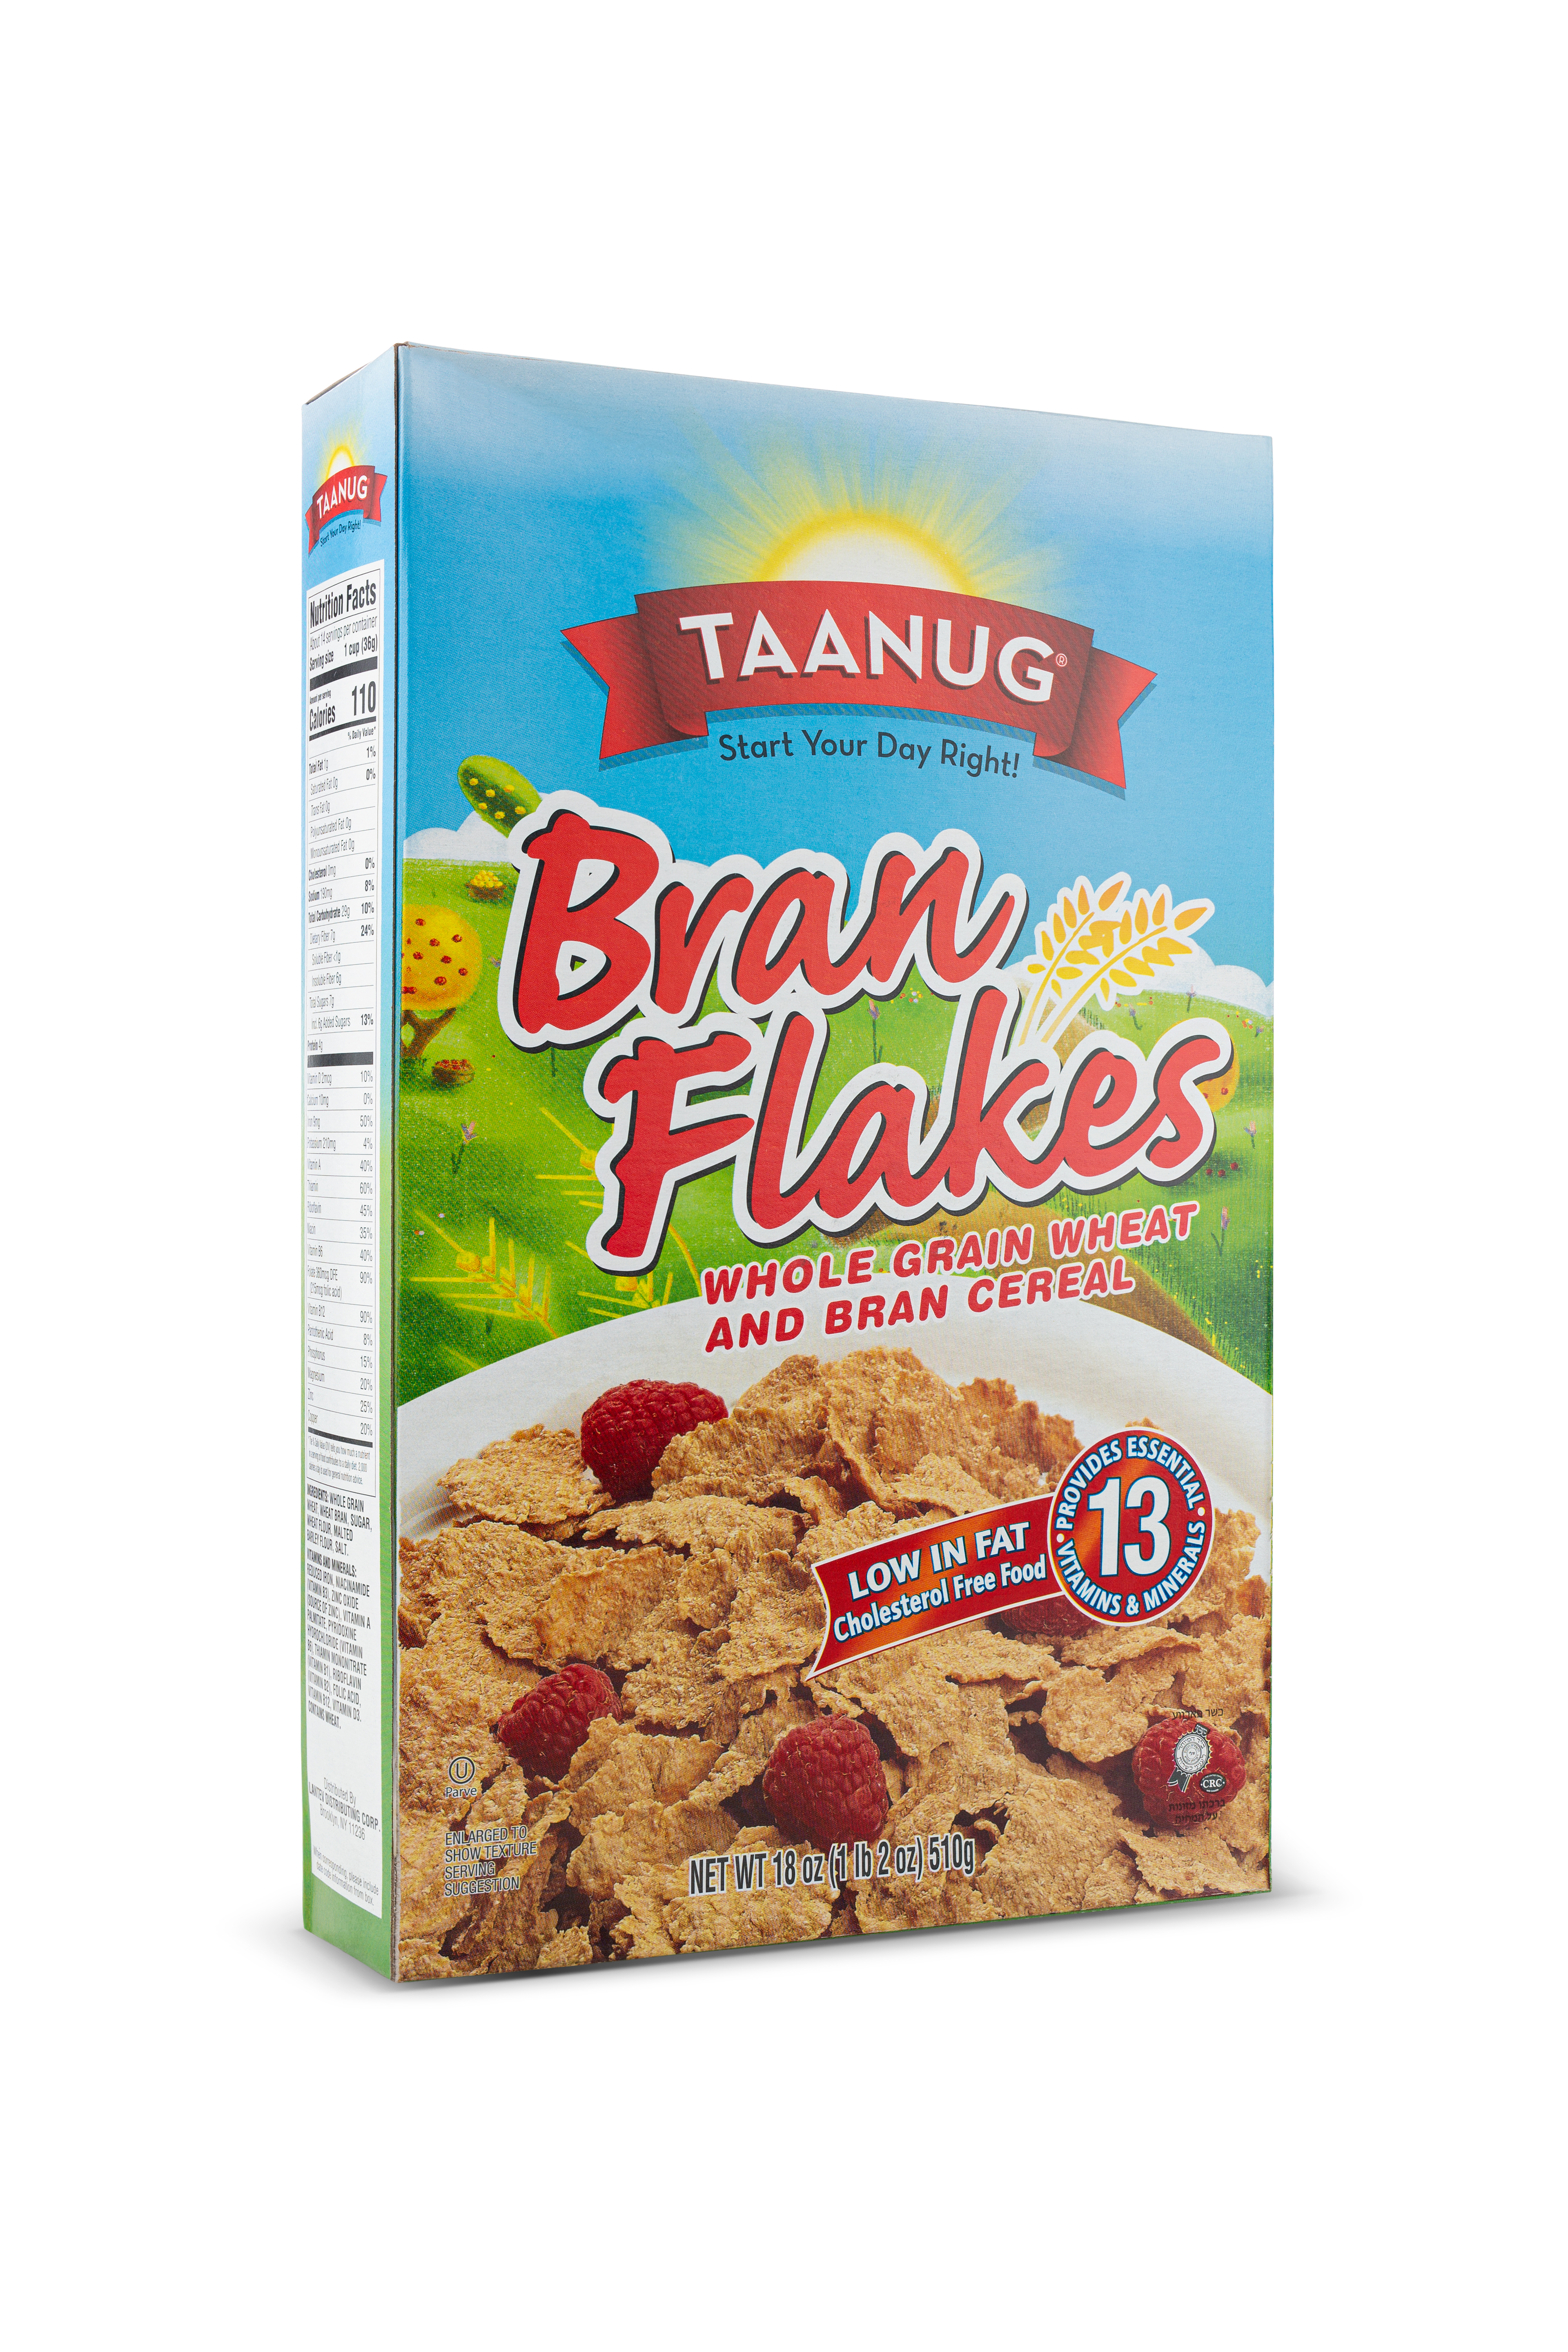 Taanug Bran Flakes Cereal 12 units per case 18.0 oz